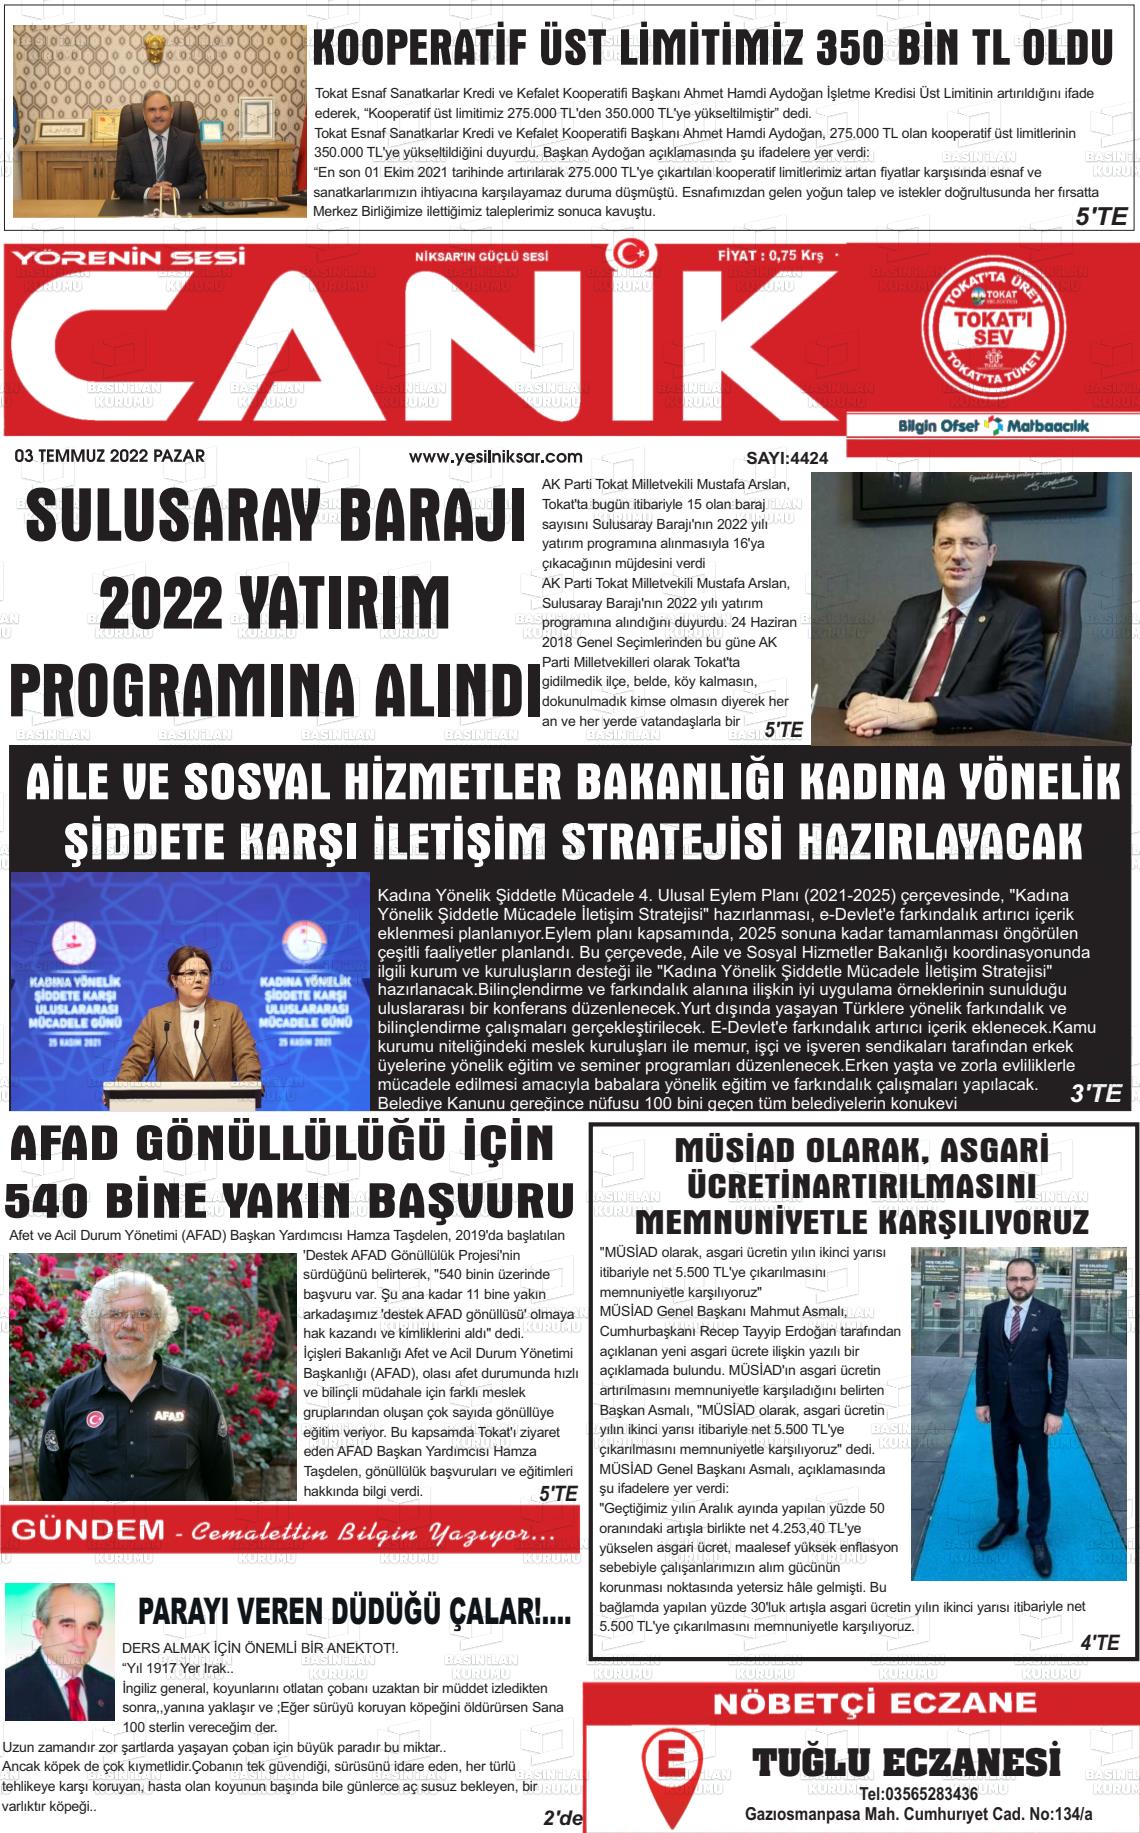 03 Temmuz 2022 Yeşil Niksar Gazete Manşeti